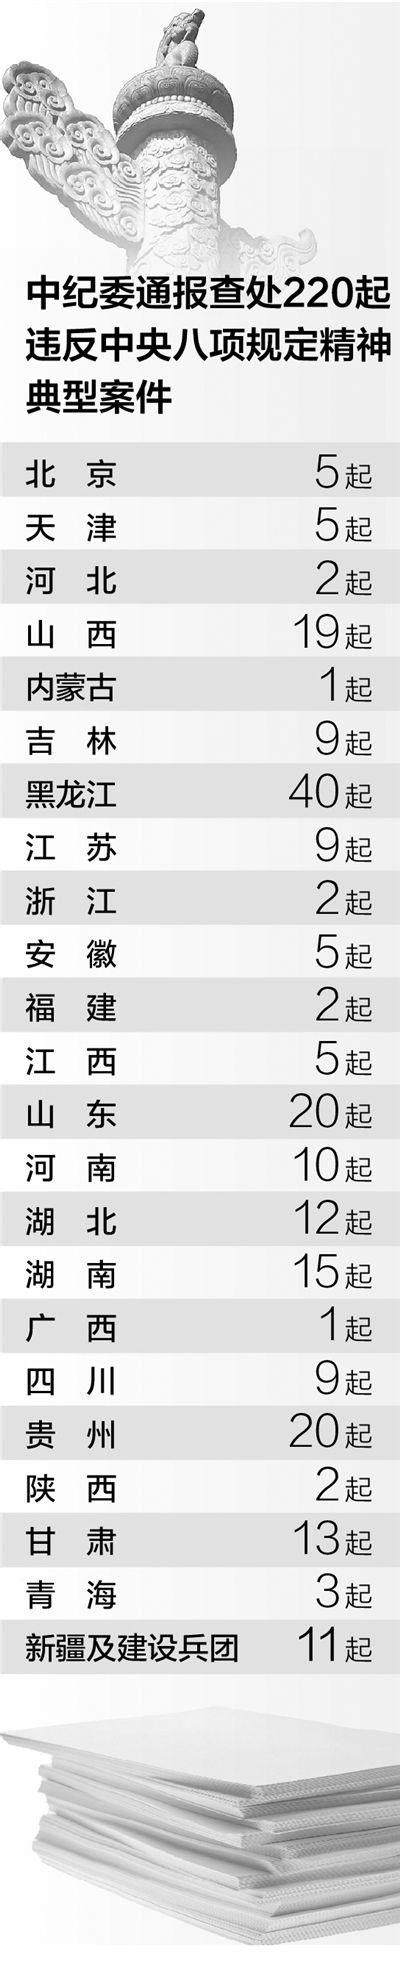 盘点中国姓氏趋势:张伟最多 2010后热衷于双姓|姓氏|姓名|重名_新浪新闻